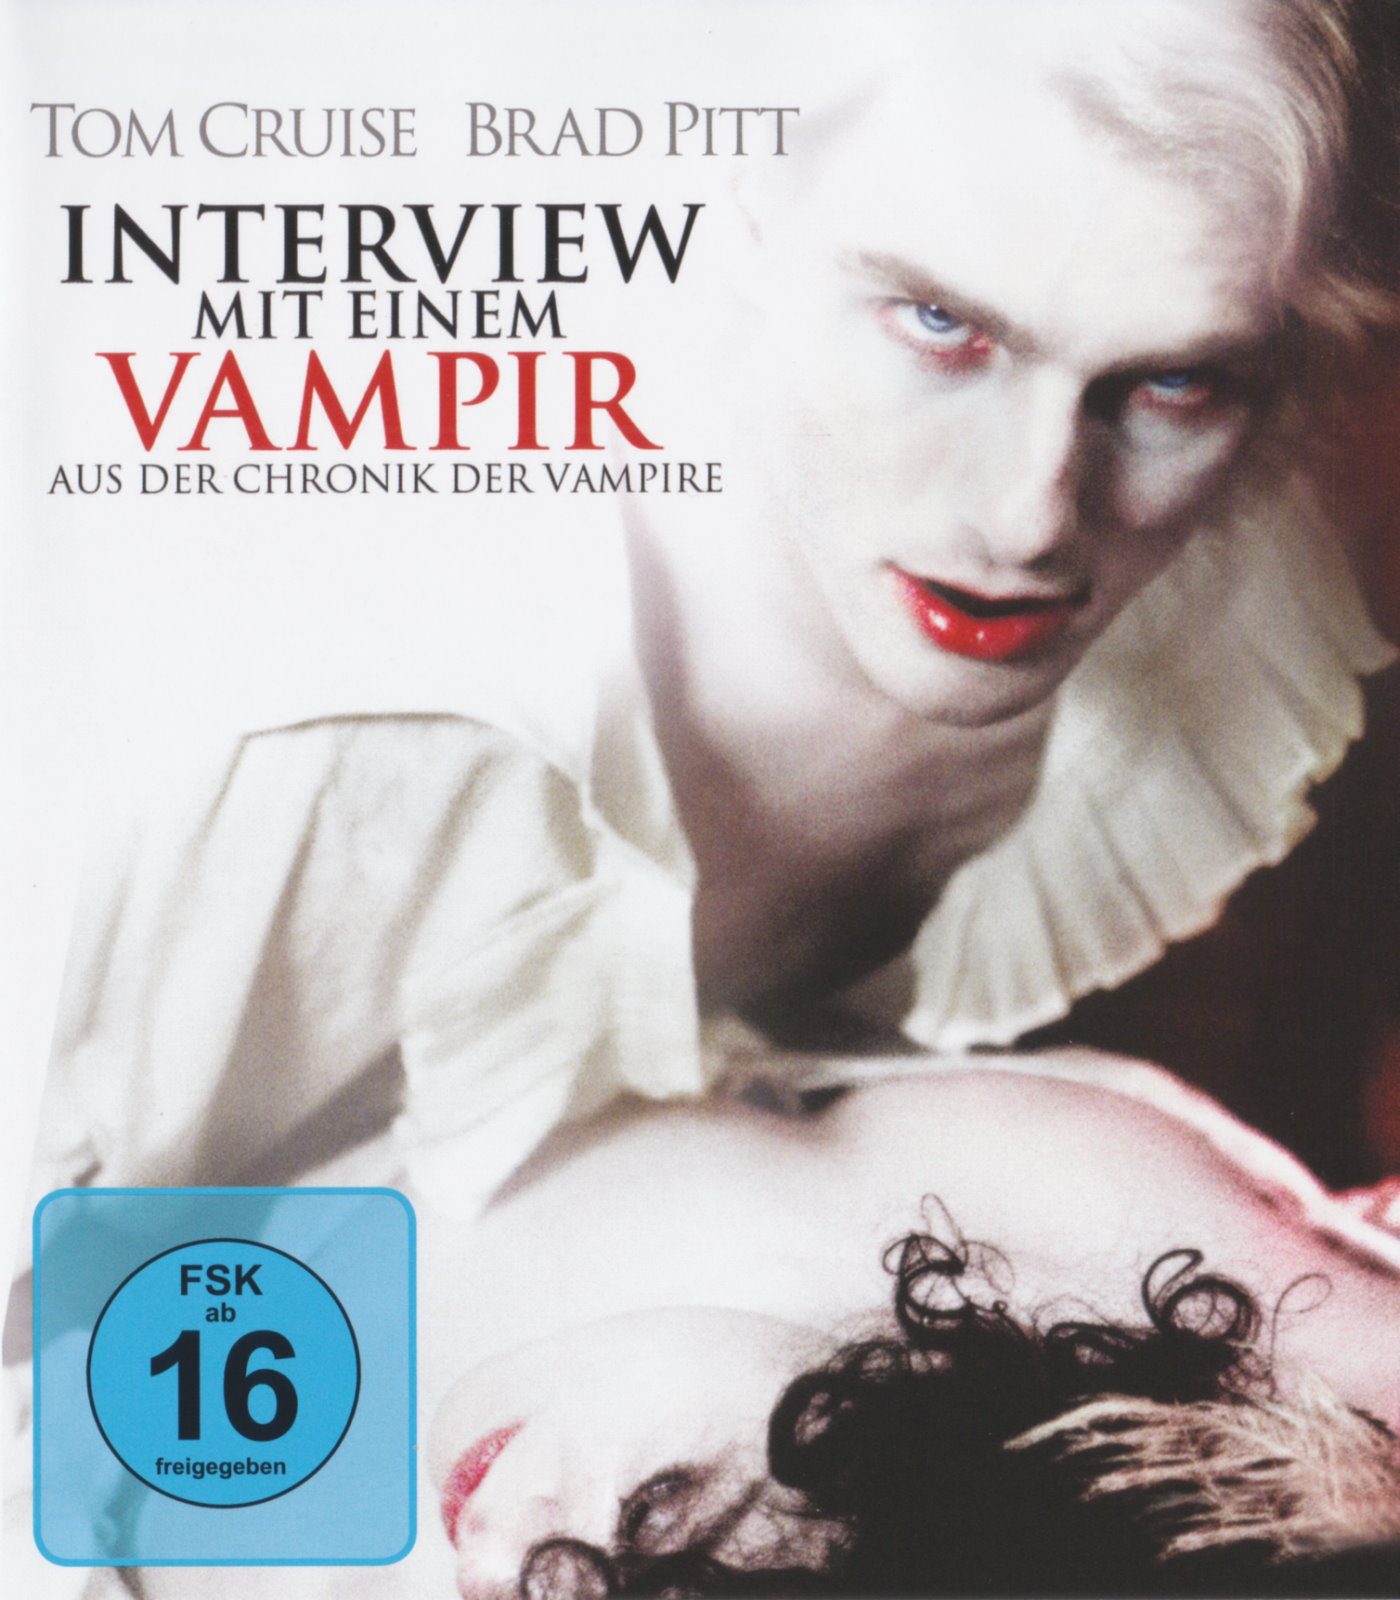 Cover - Interview mit einem Vampir - Aus der Chronik der Vampire.jpg